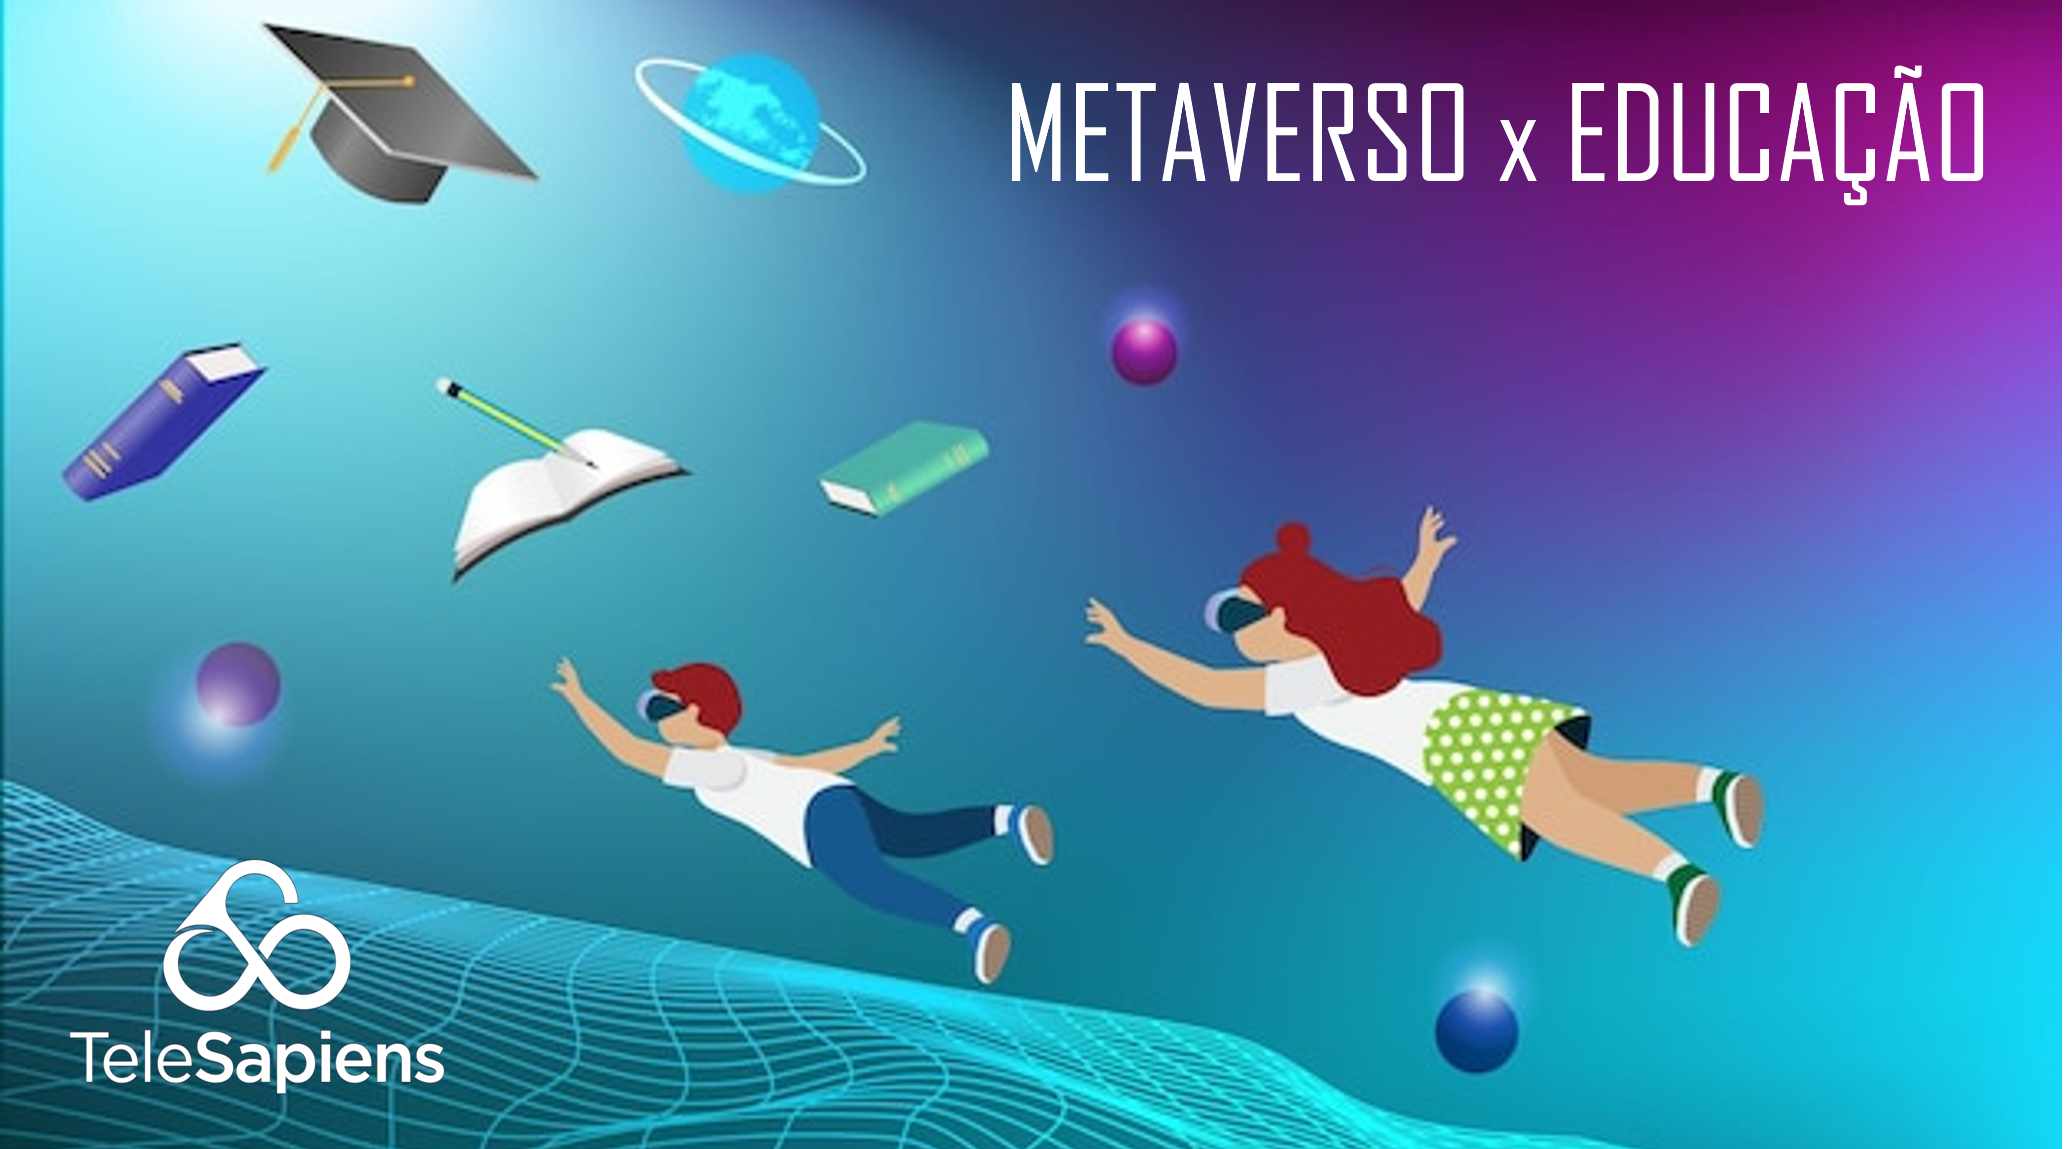 Aula no Metaverso - Educação no Metaverso na Prática - Corte Filosofia Tech  